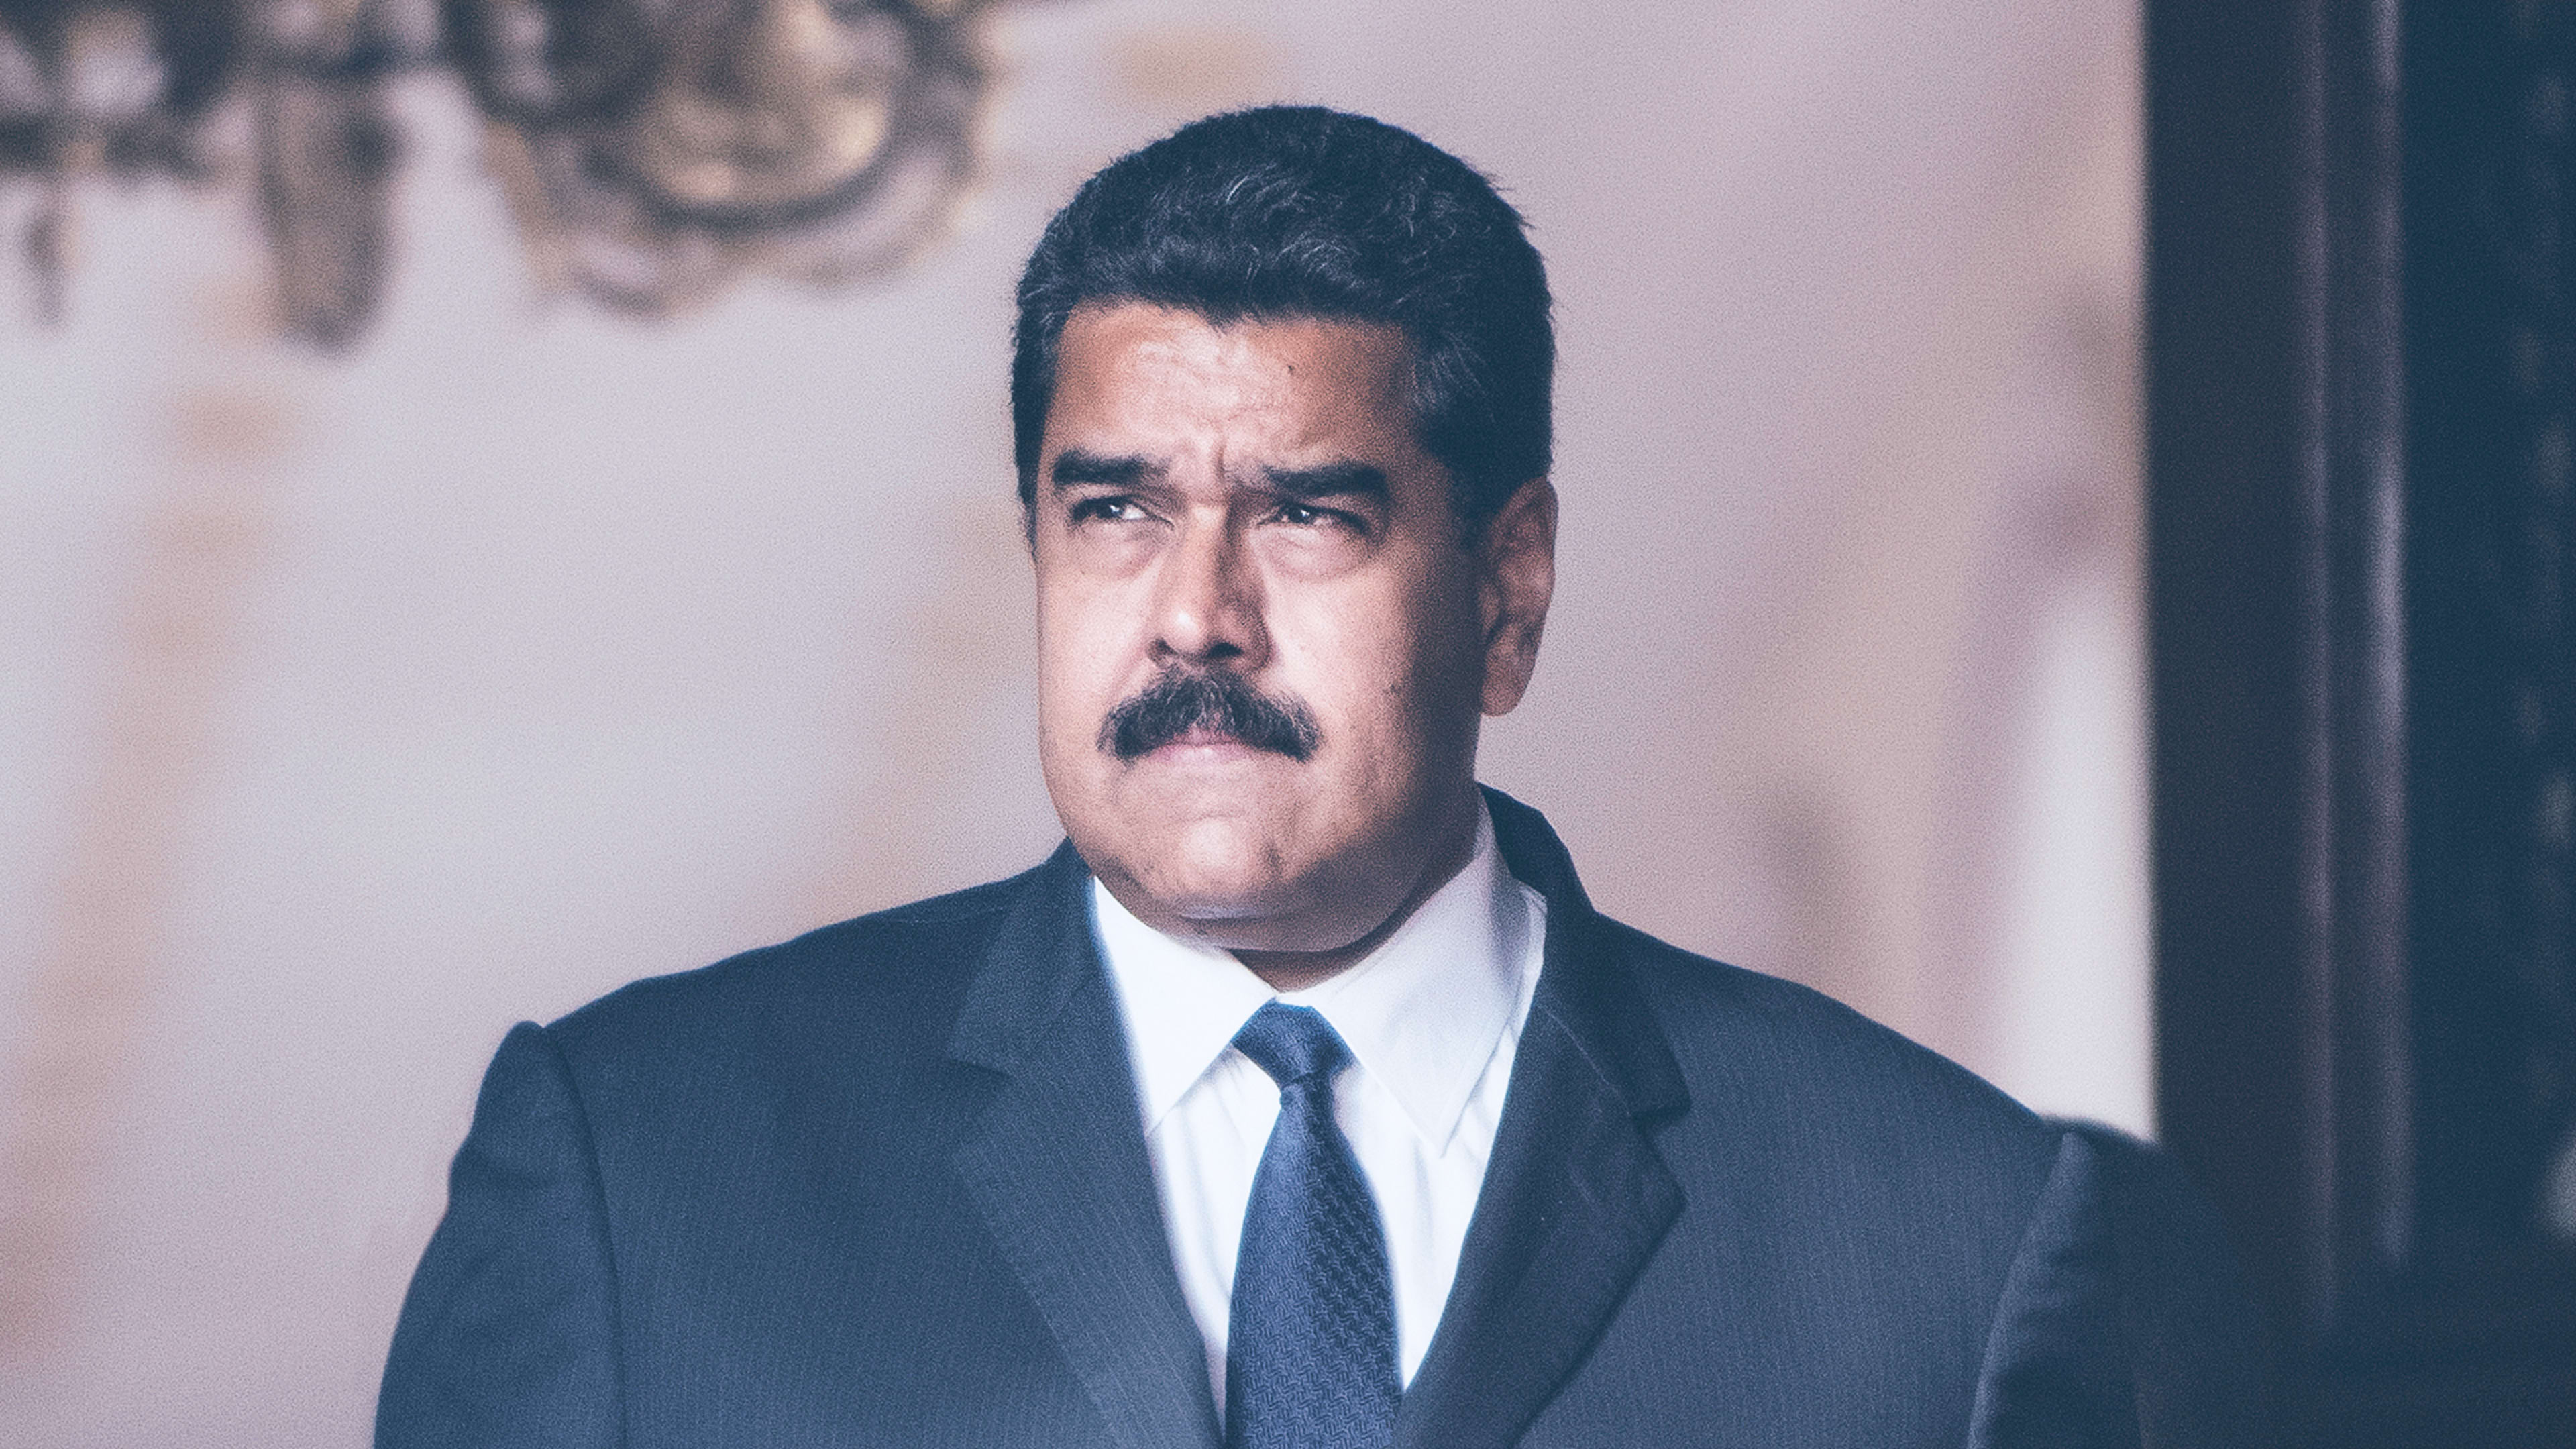 Updated: Instagram says it didn’t unverify Venezuelan President Nicolás Maduro